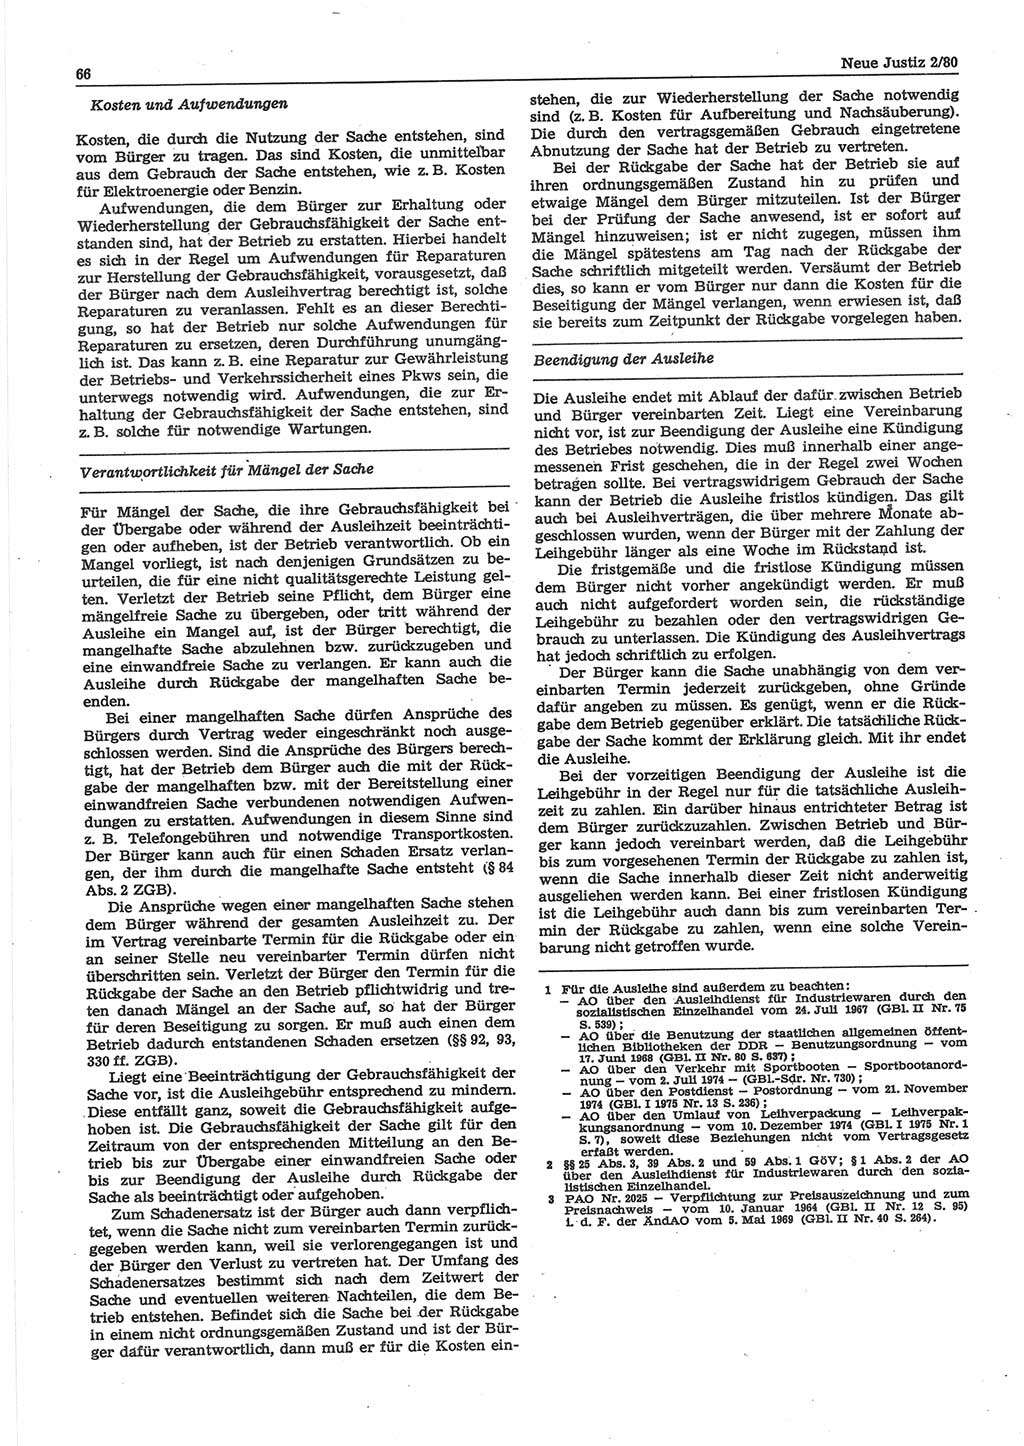 Neue Justiz (NJ), Zeitschrift für sozialistisches Recht und Gesetzlichkeit [Deutsche Demokratische Republik (DDR)], 34. Jahrgang 1980, Seite 66 (NJ DDR 1980, S. 66)